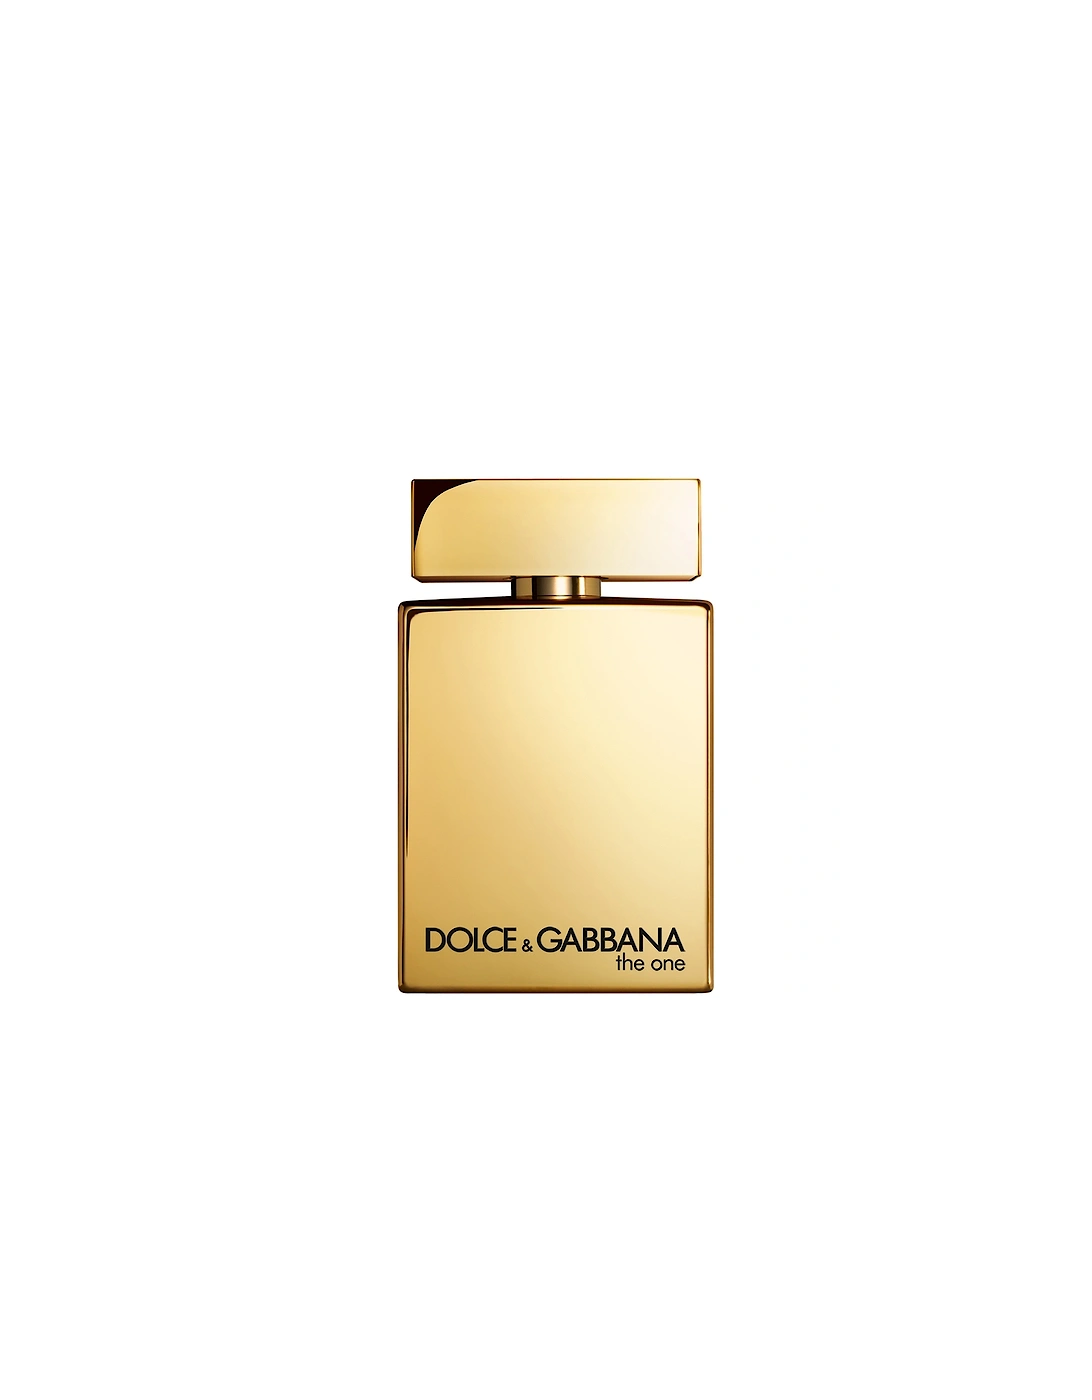 Dolce&Gabbana The One Gold Eau de Parfum Intense Pour Homme 100ml, 2 of 1